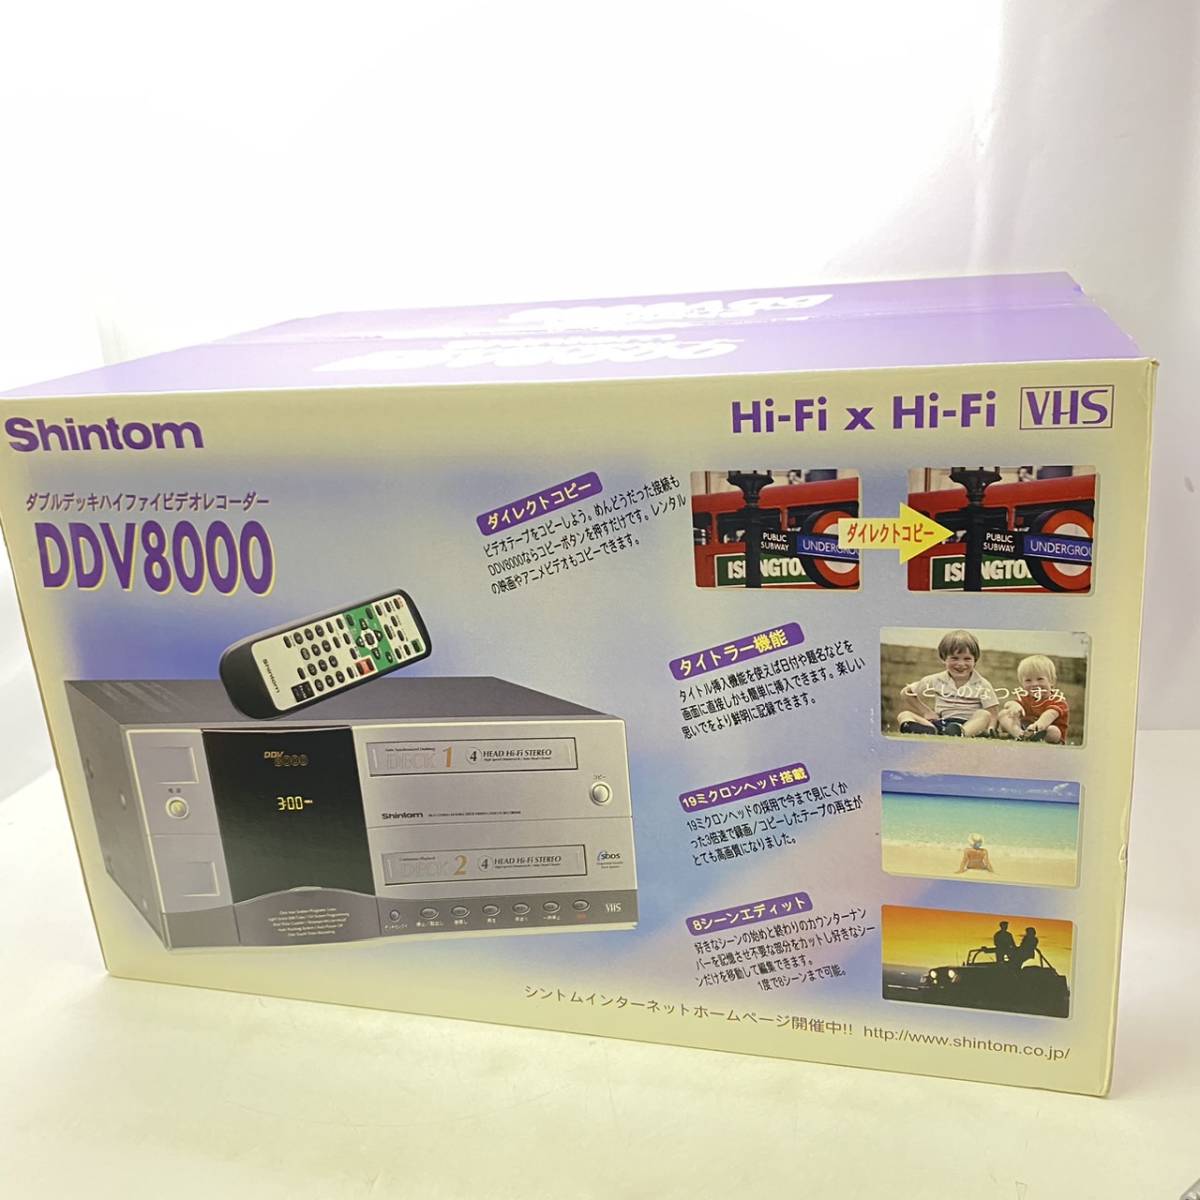 送料無料g13153 Shintom シントム ダブルデッキハイファイビデオ レコーダ DDV8000 VHS Hi-Fi x Hi-Fi ビデオデッキ 箱付き 未使用 未開封